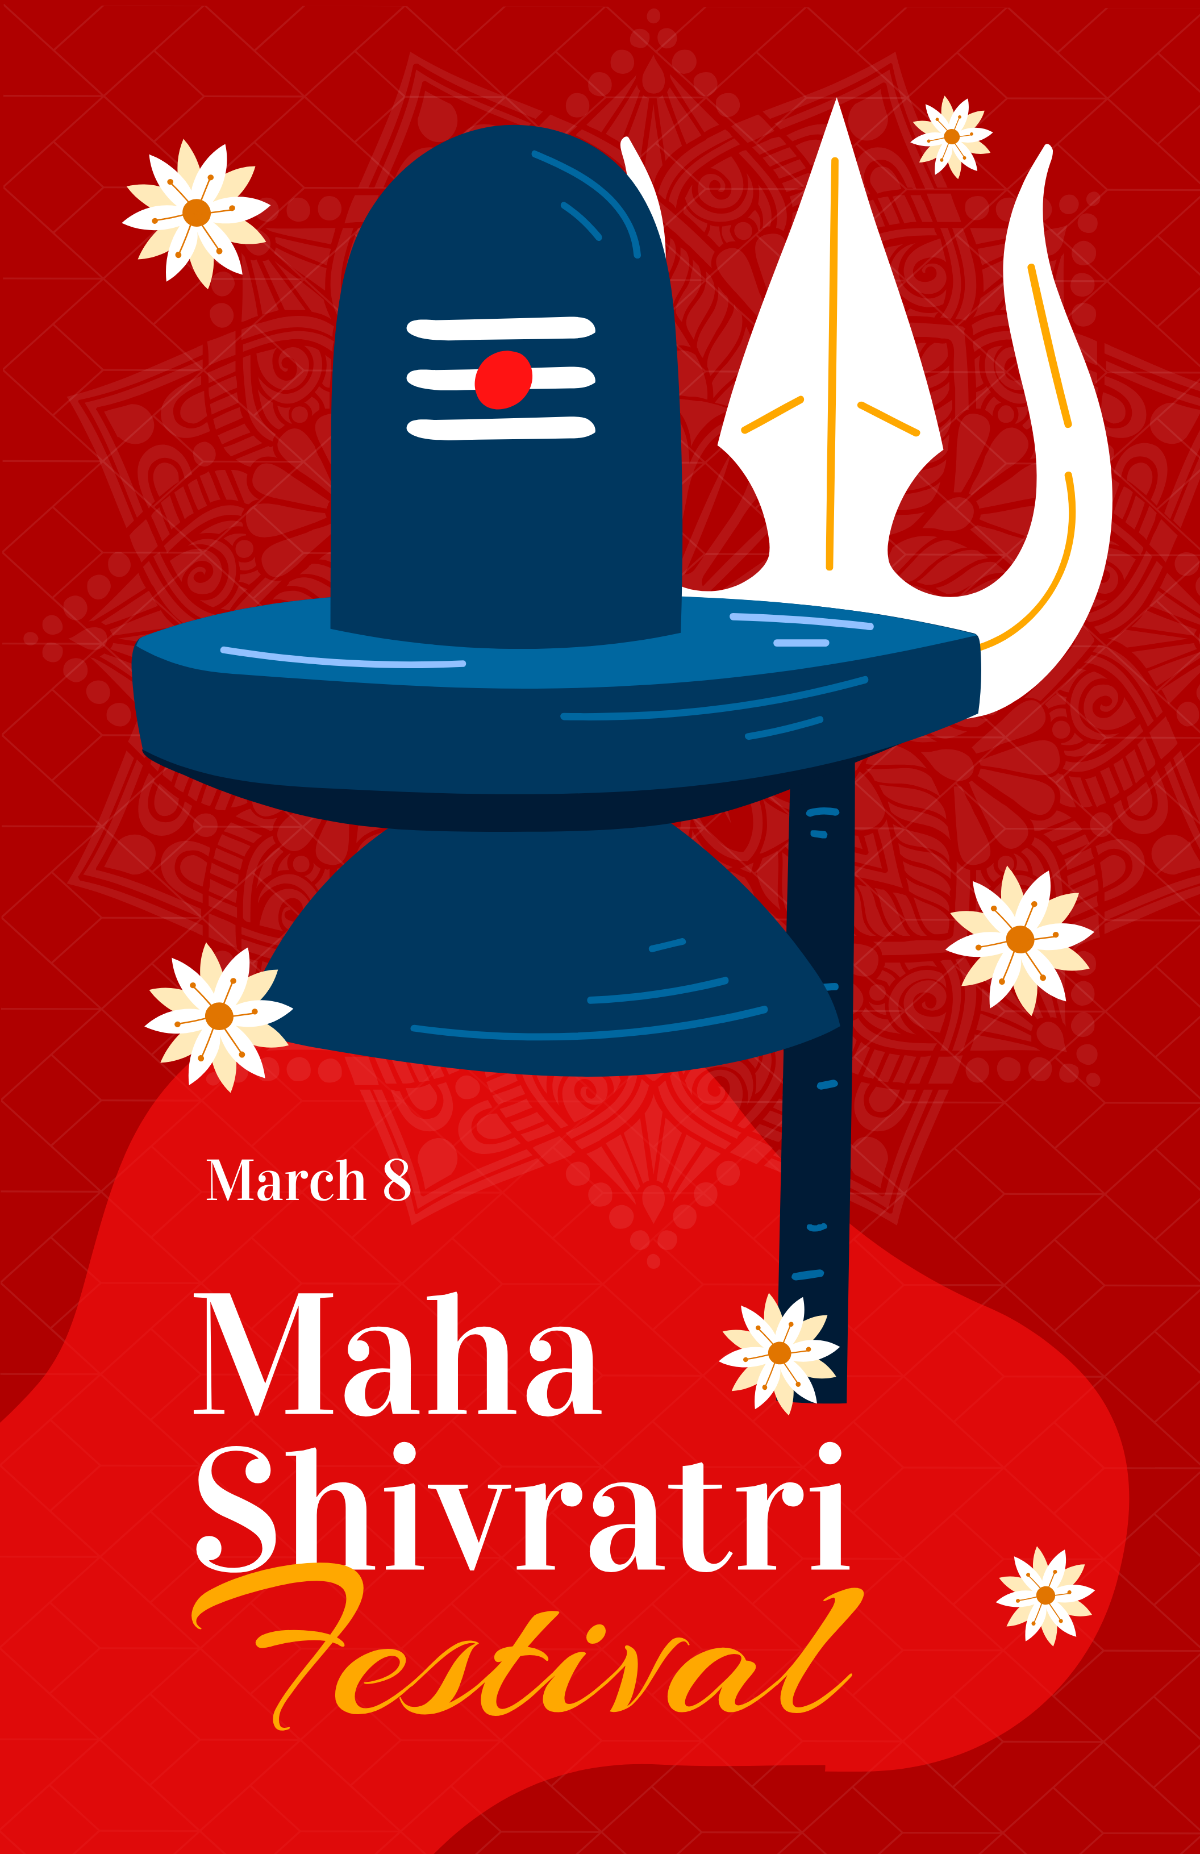 Maha Shivratri Festival Poster